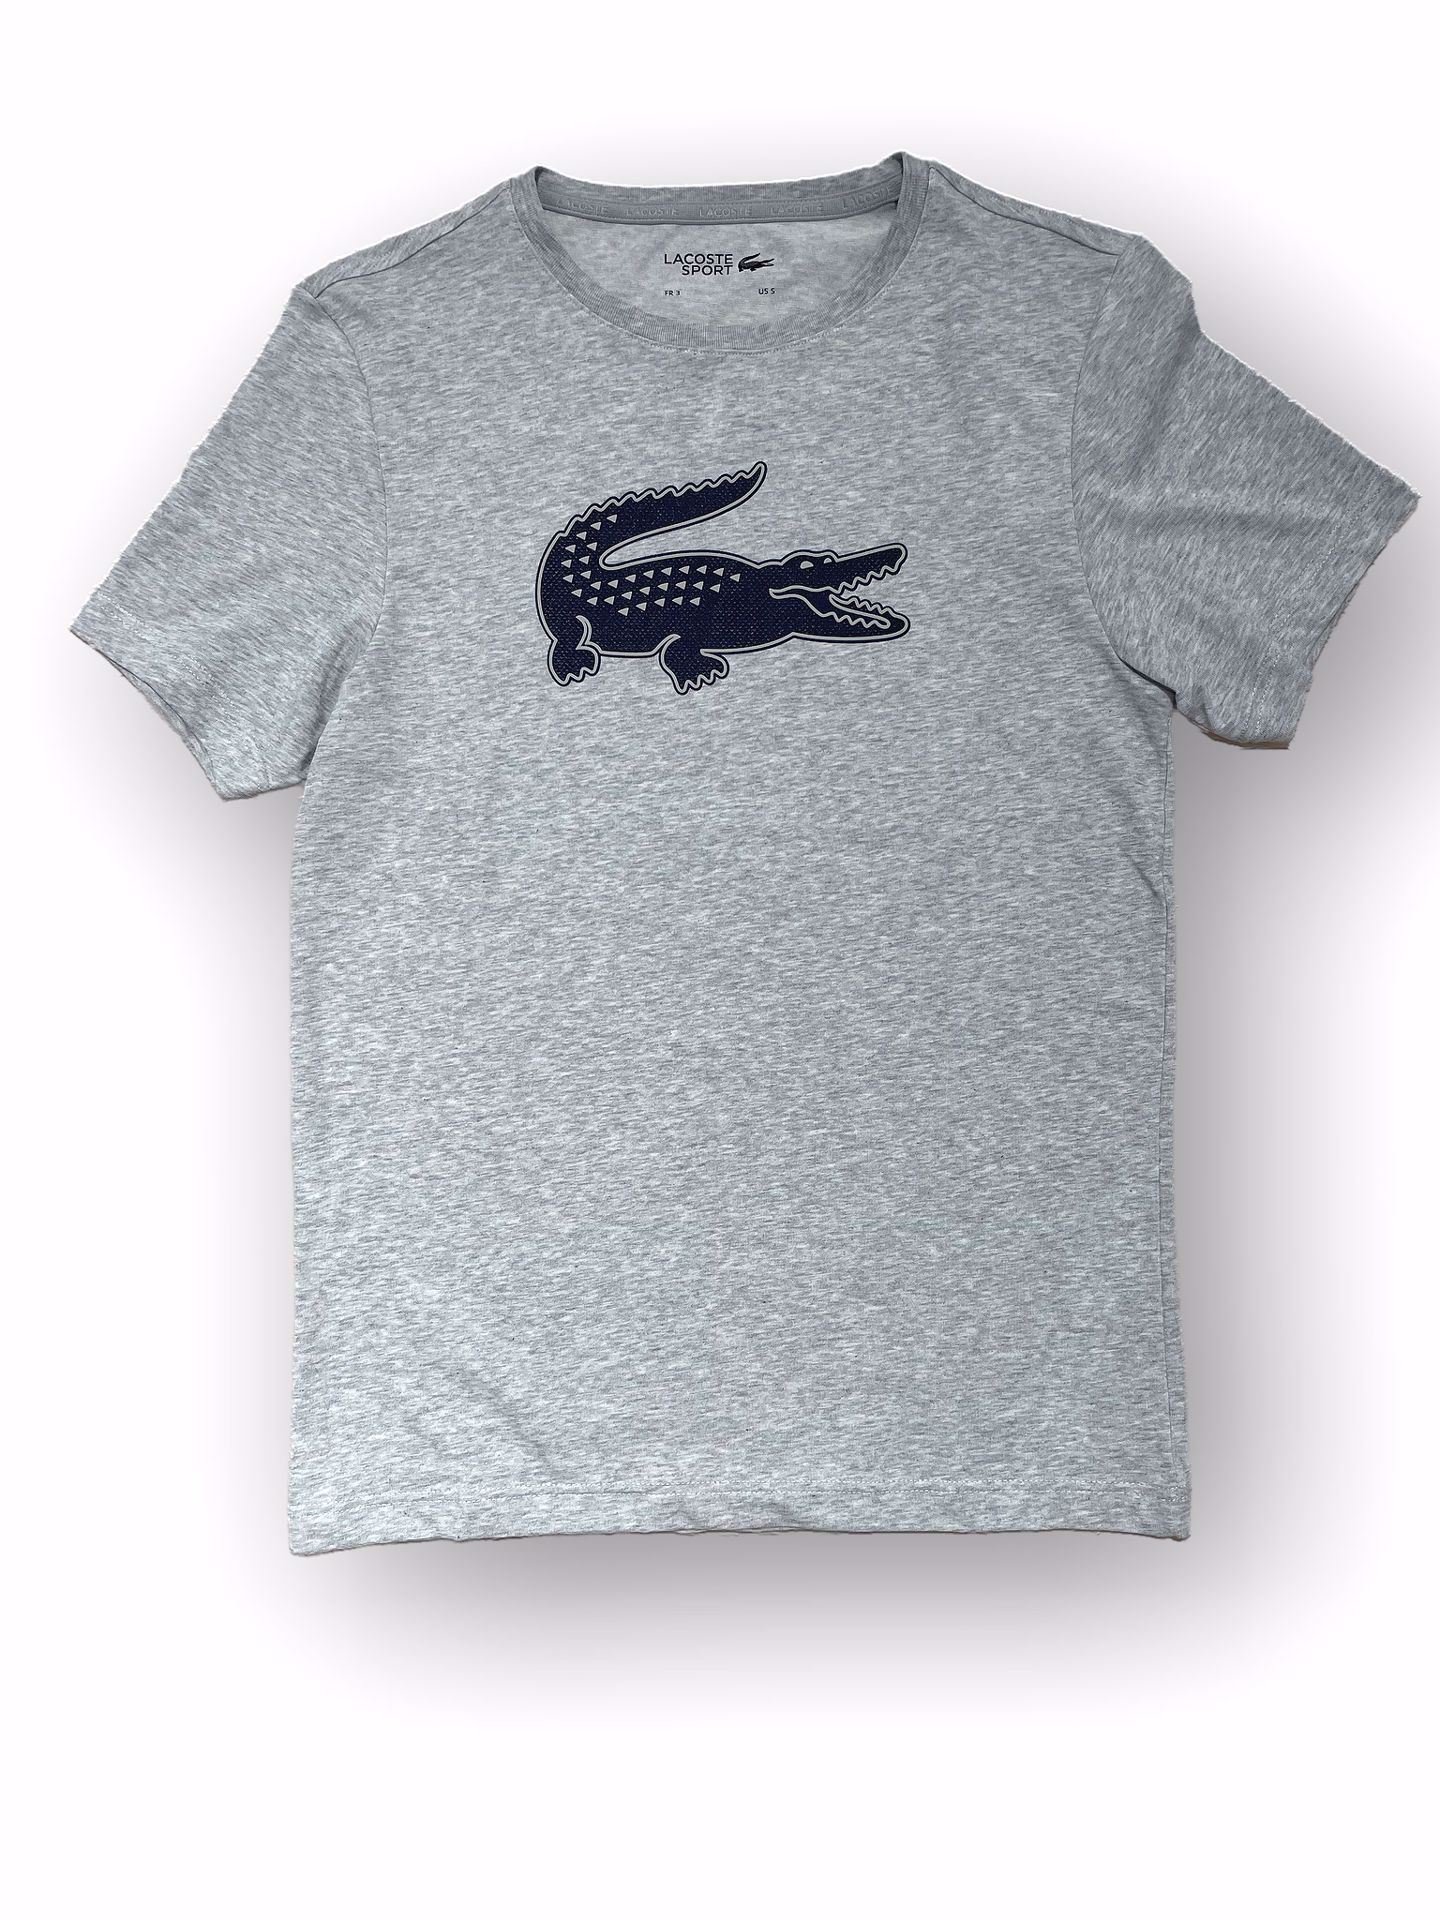 Trampe rookie overraskende Nu Men Shop. Lacoste Croco Logo T-shirt Grå